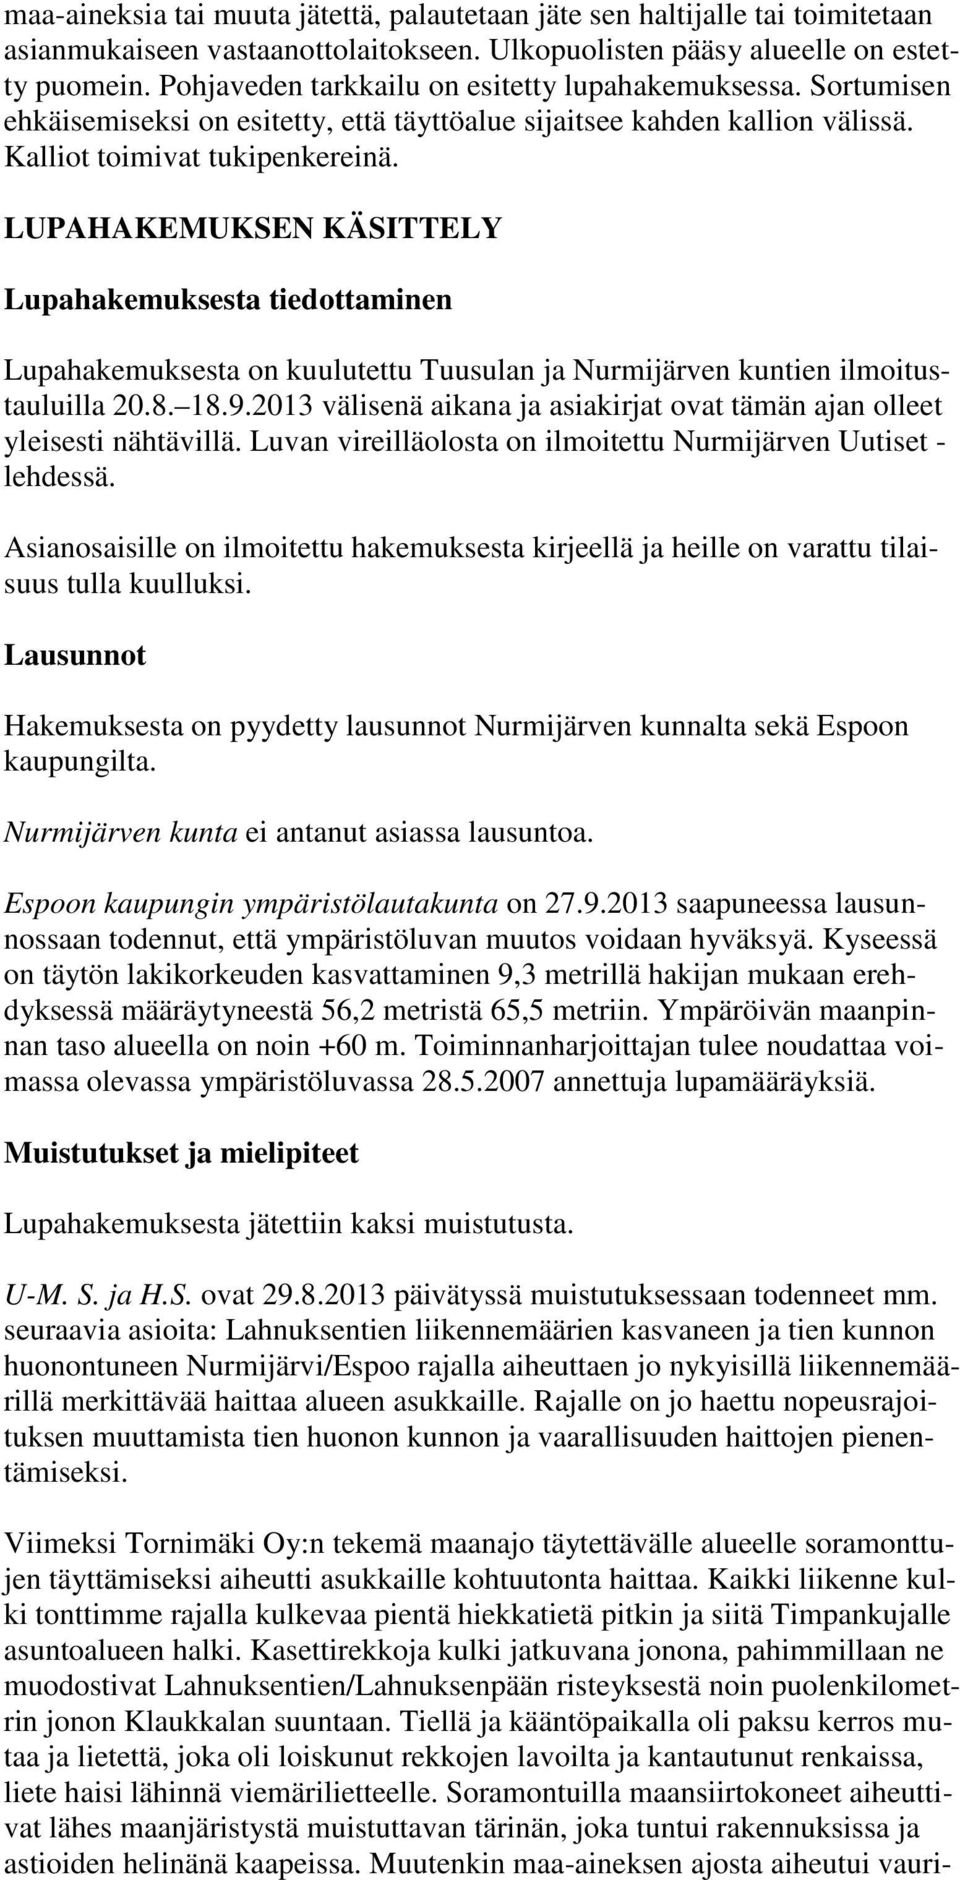 LUPAHAKEMUKSEN KÄSITTELY Lupahakemuksesta tiedottaminen Lupahakemuksesta on kuulutettu Tuusulan ja Nurmijärven kuntien ilmoitustauluilla 20.8. 18.9.